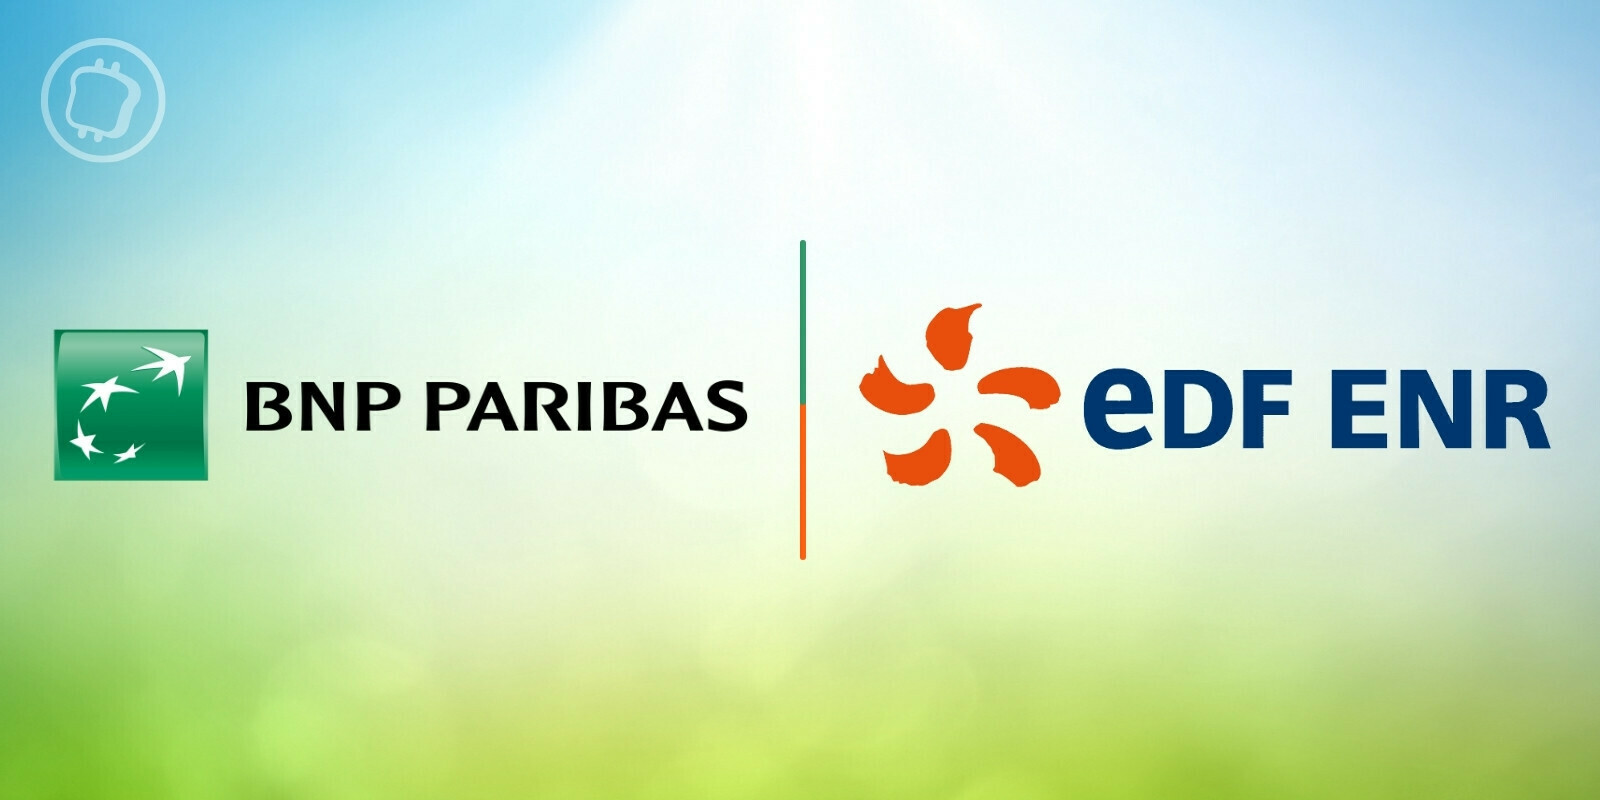 BNP Paribas s'associe à EDF ENR pour tokeniser une obligation afin de financer un projet d'énergie durable